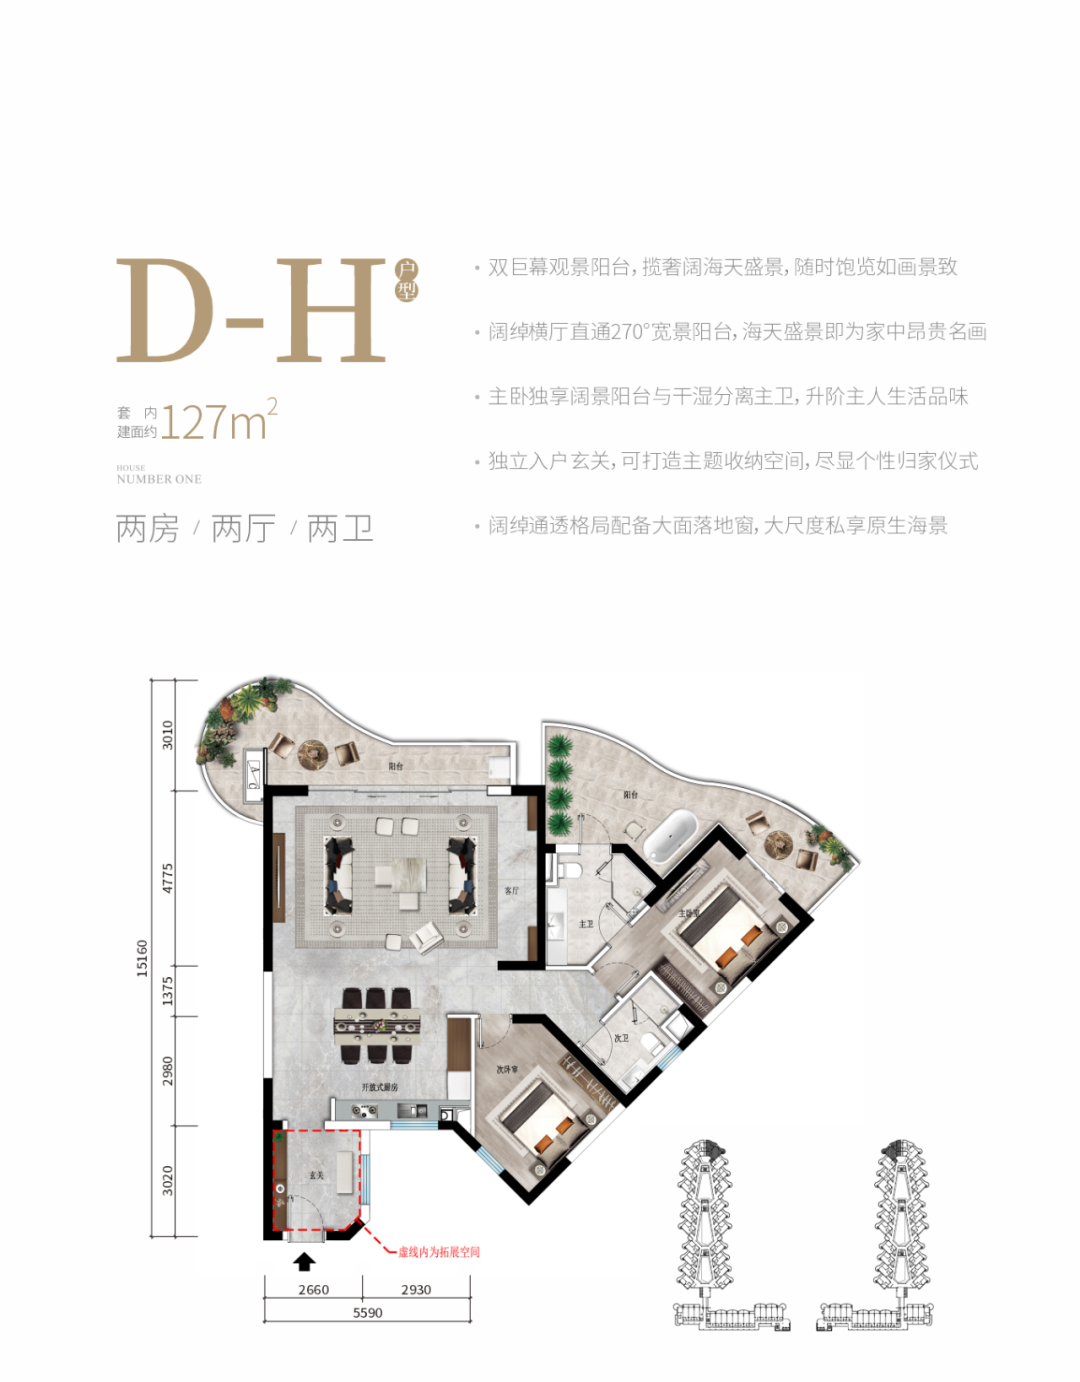 江东湾一号 产权式酒店 D-H户型 2房2厅2卫 建面127㎡